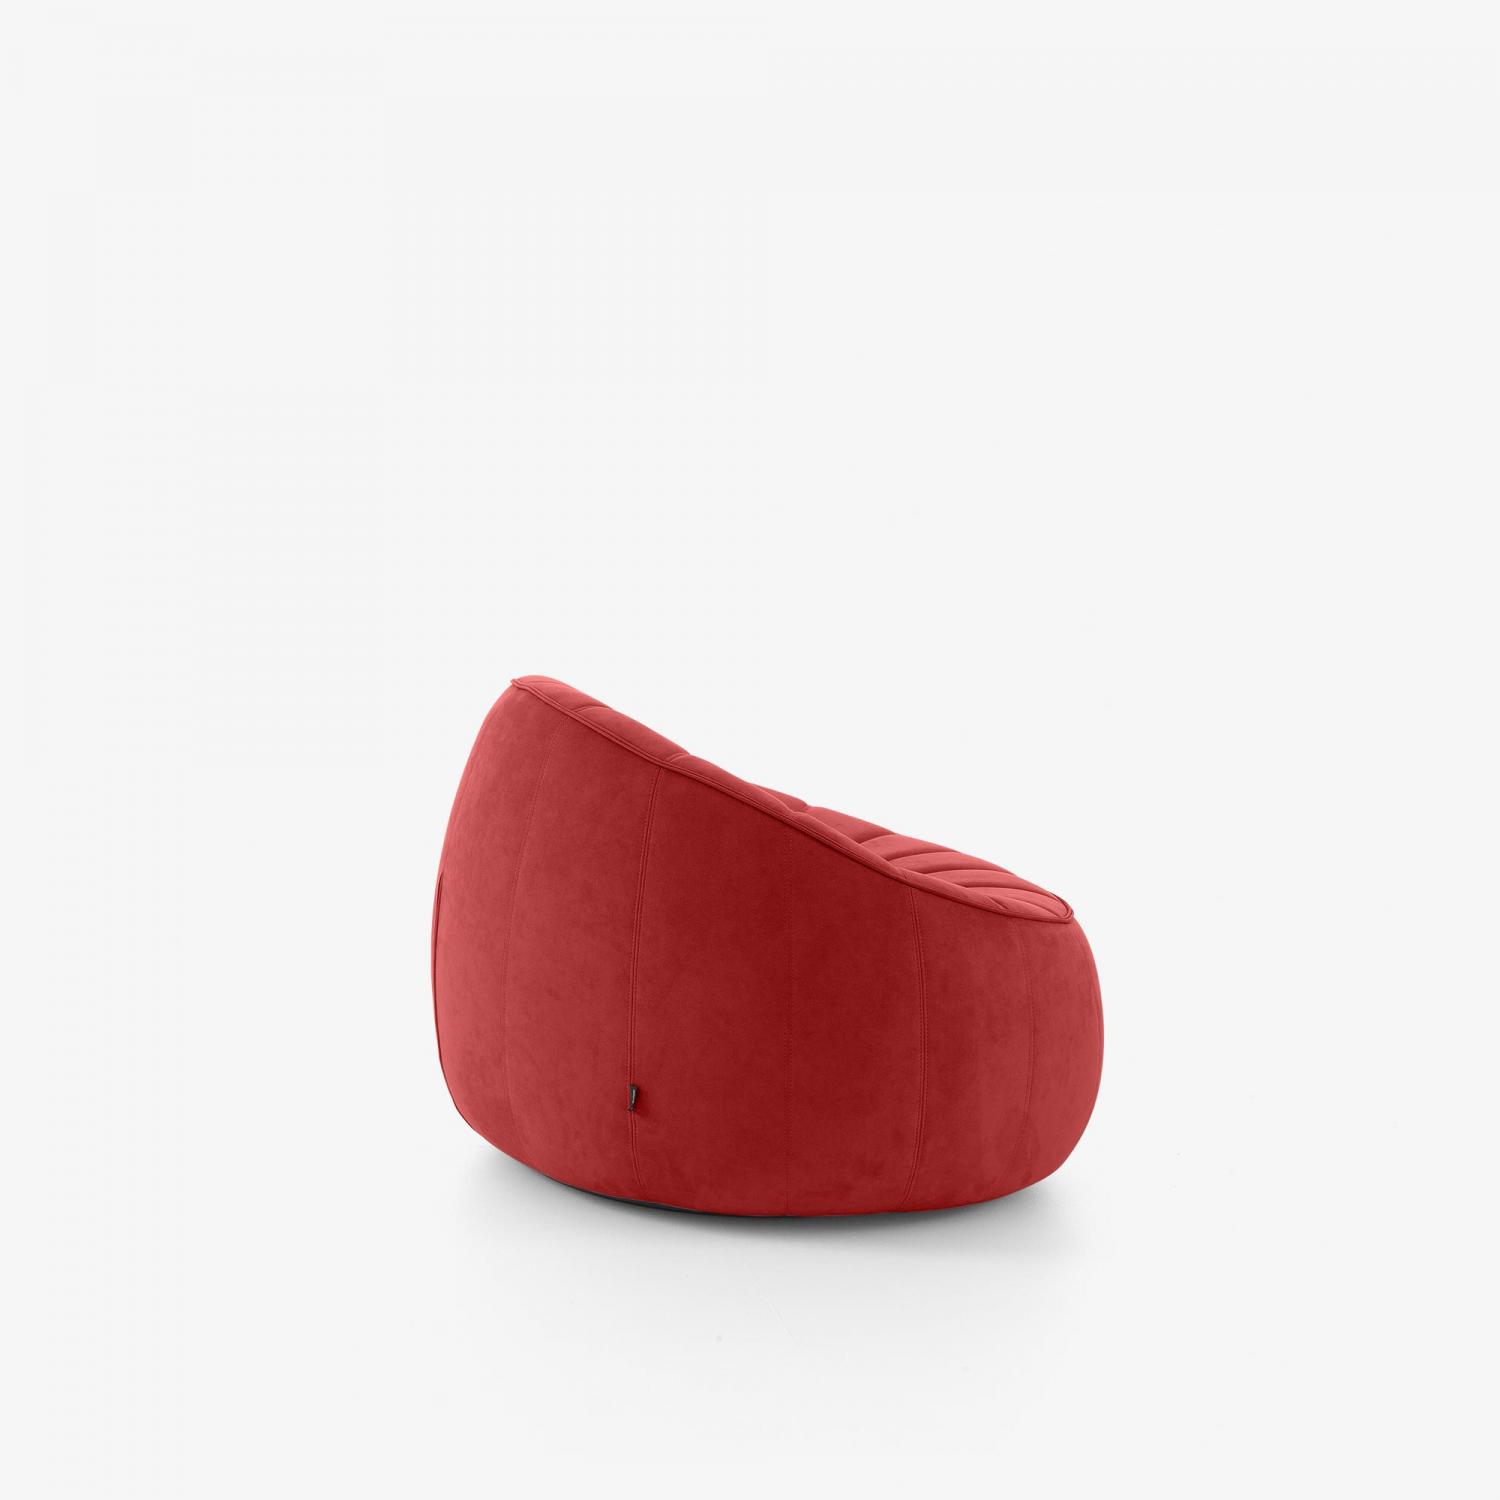 Ottoman Drehbarer Sessel mit Armlehnen Komplettes Element aus Alcantara in Rot